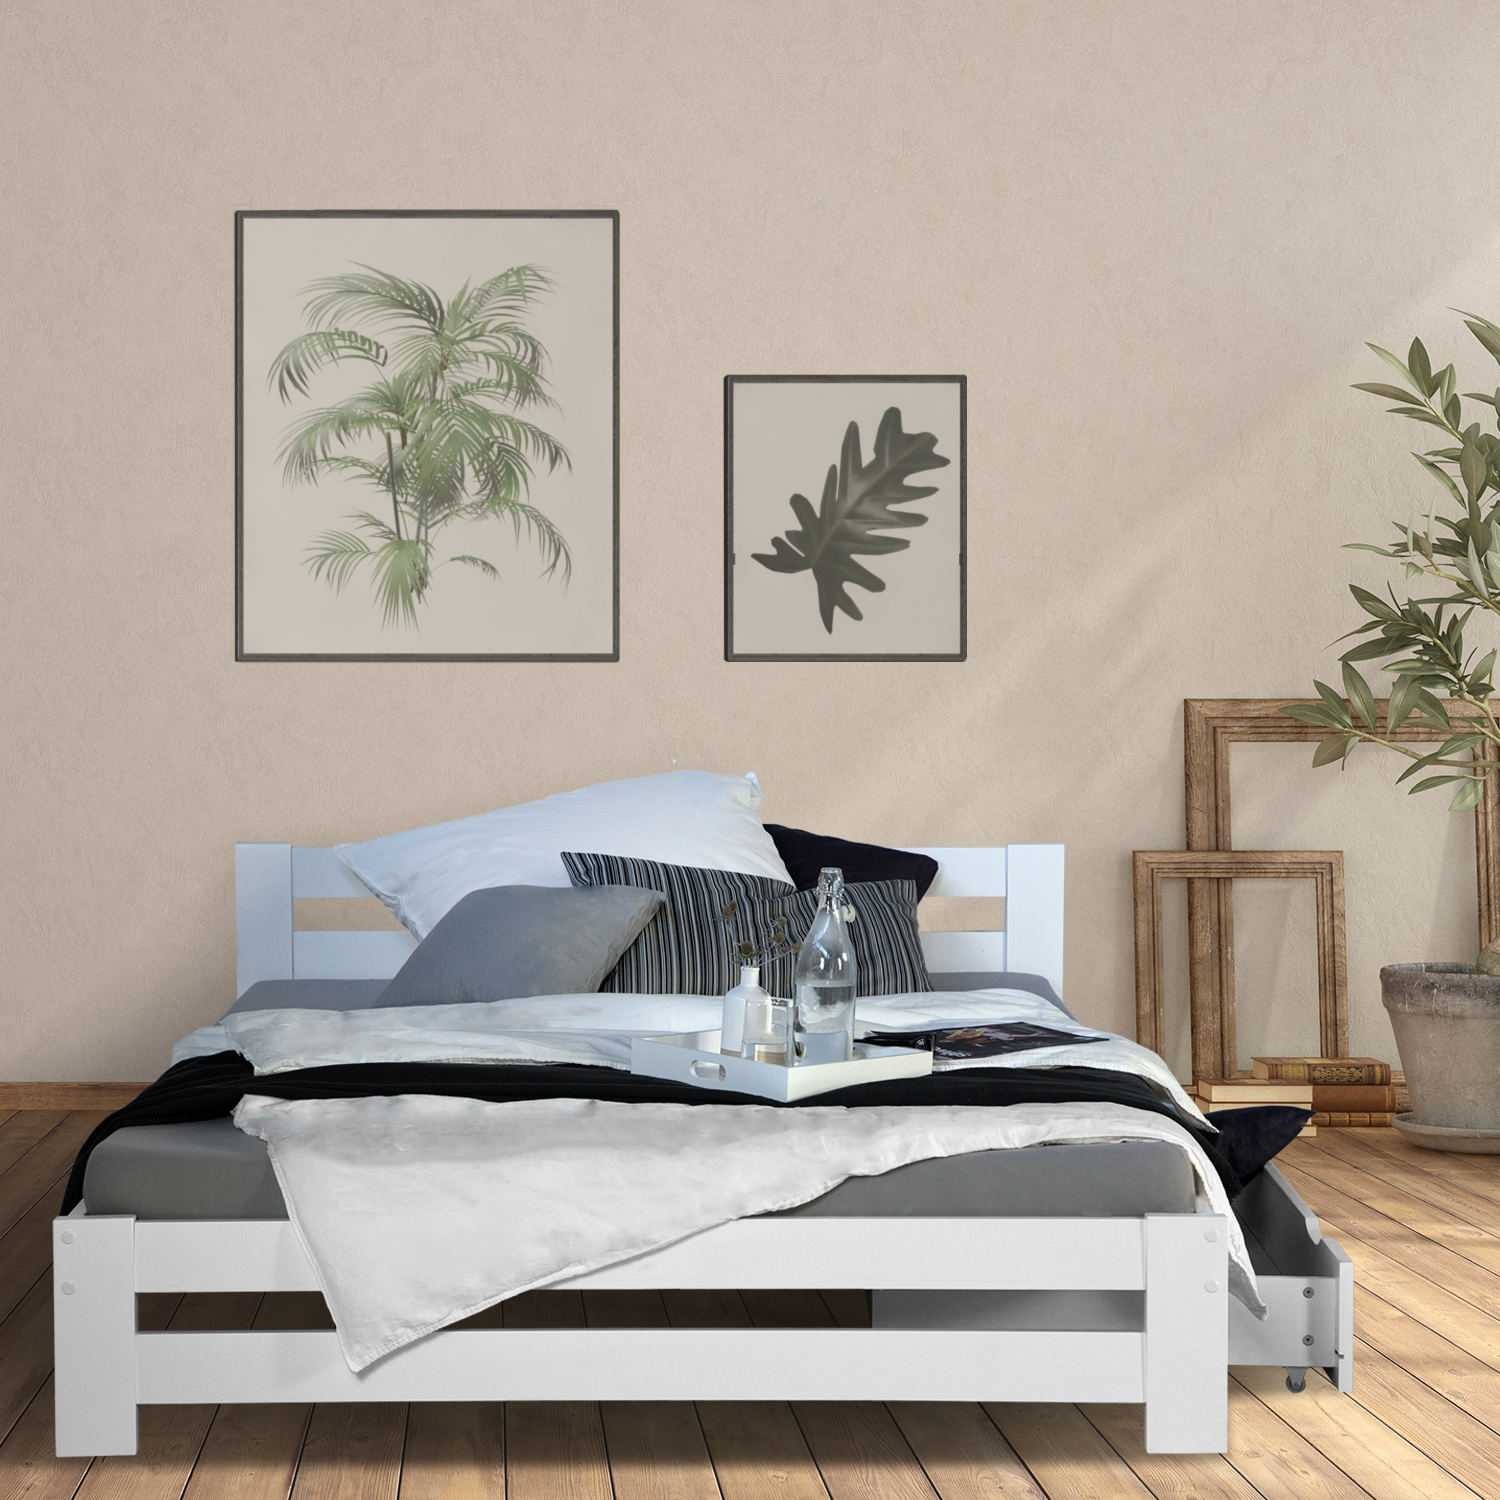 Doppelbett Holzbett 140x200 Weiß Kiefer Bett Mit Bettkasten Bettgestell Holz